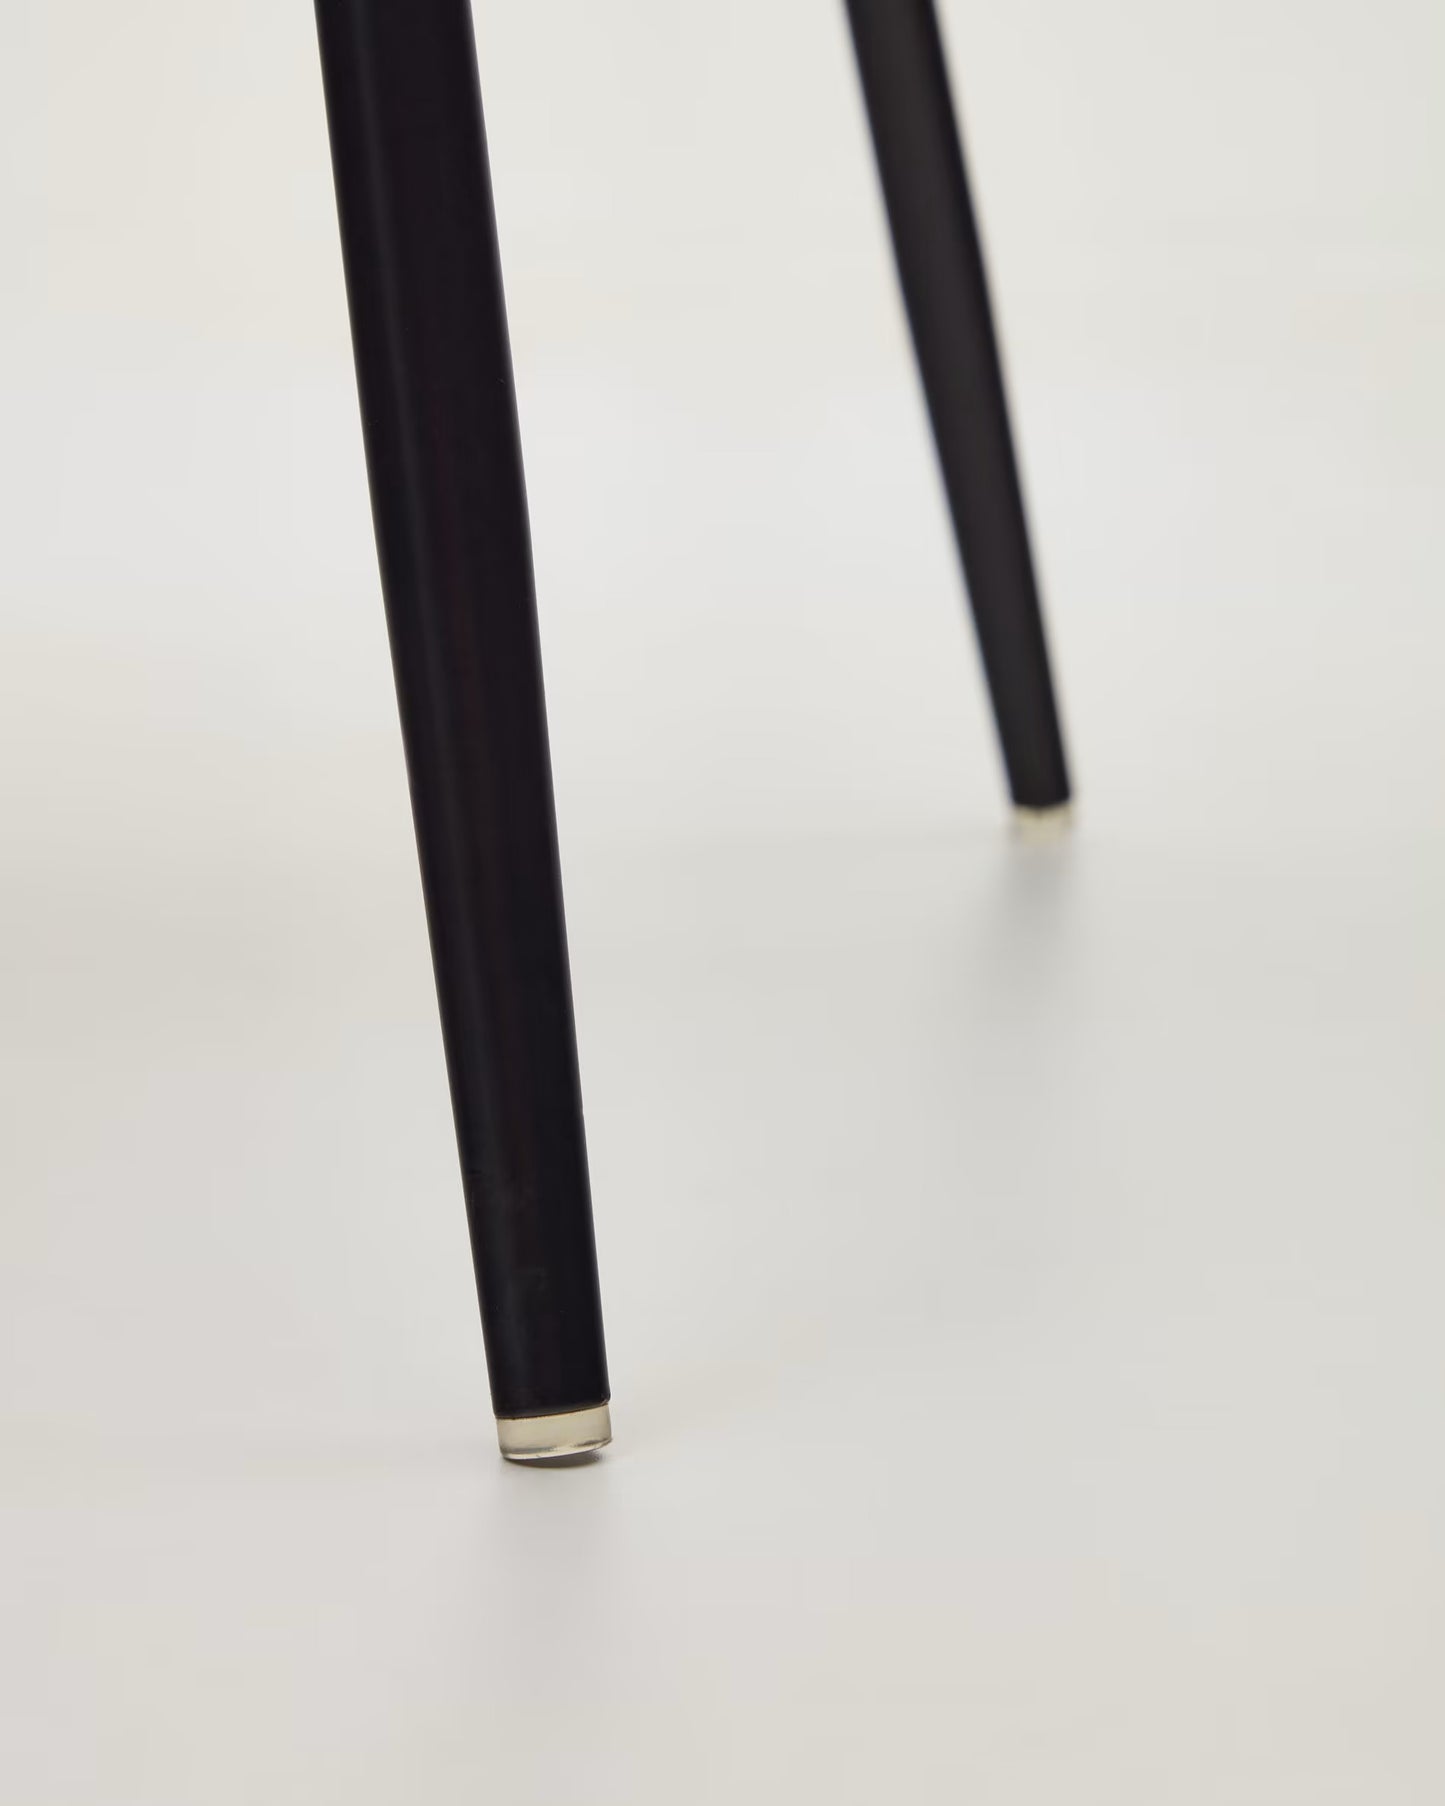 
                  
                    MELINA - Stuhl in braun mit Stahlbeinen mit schwarzem Finish
                  
                